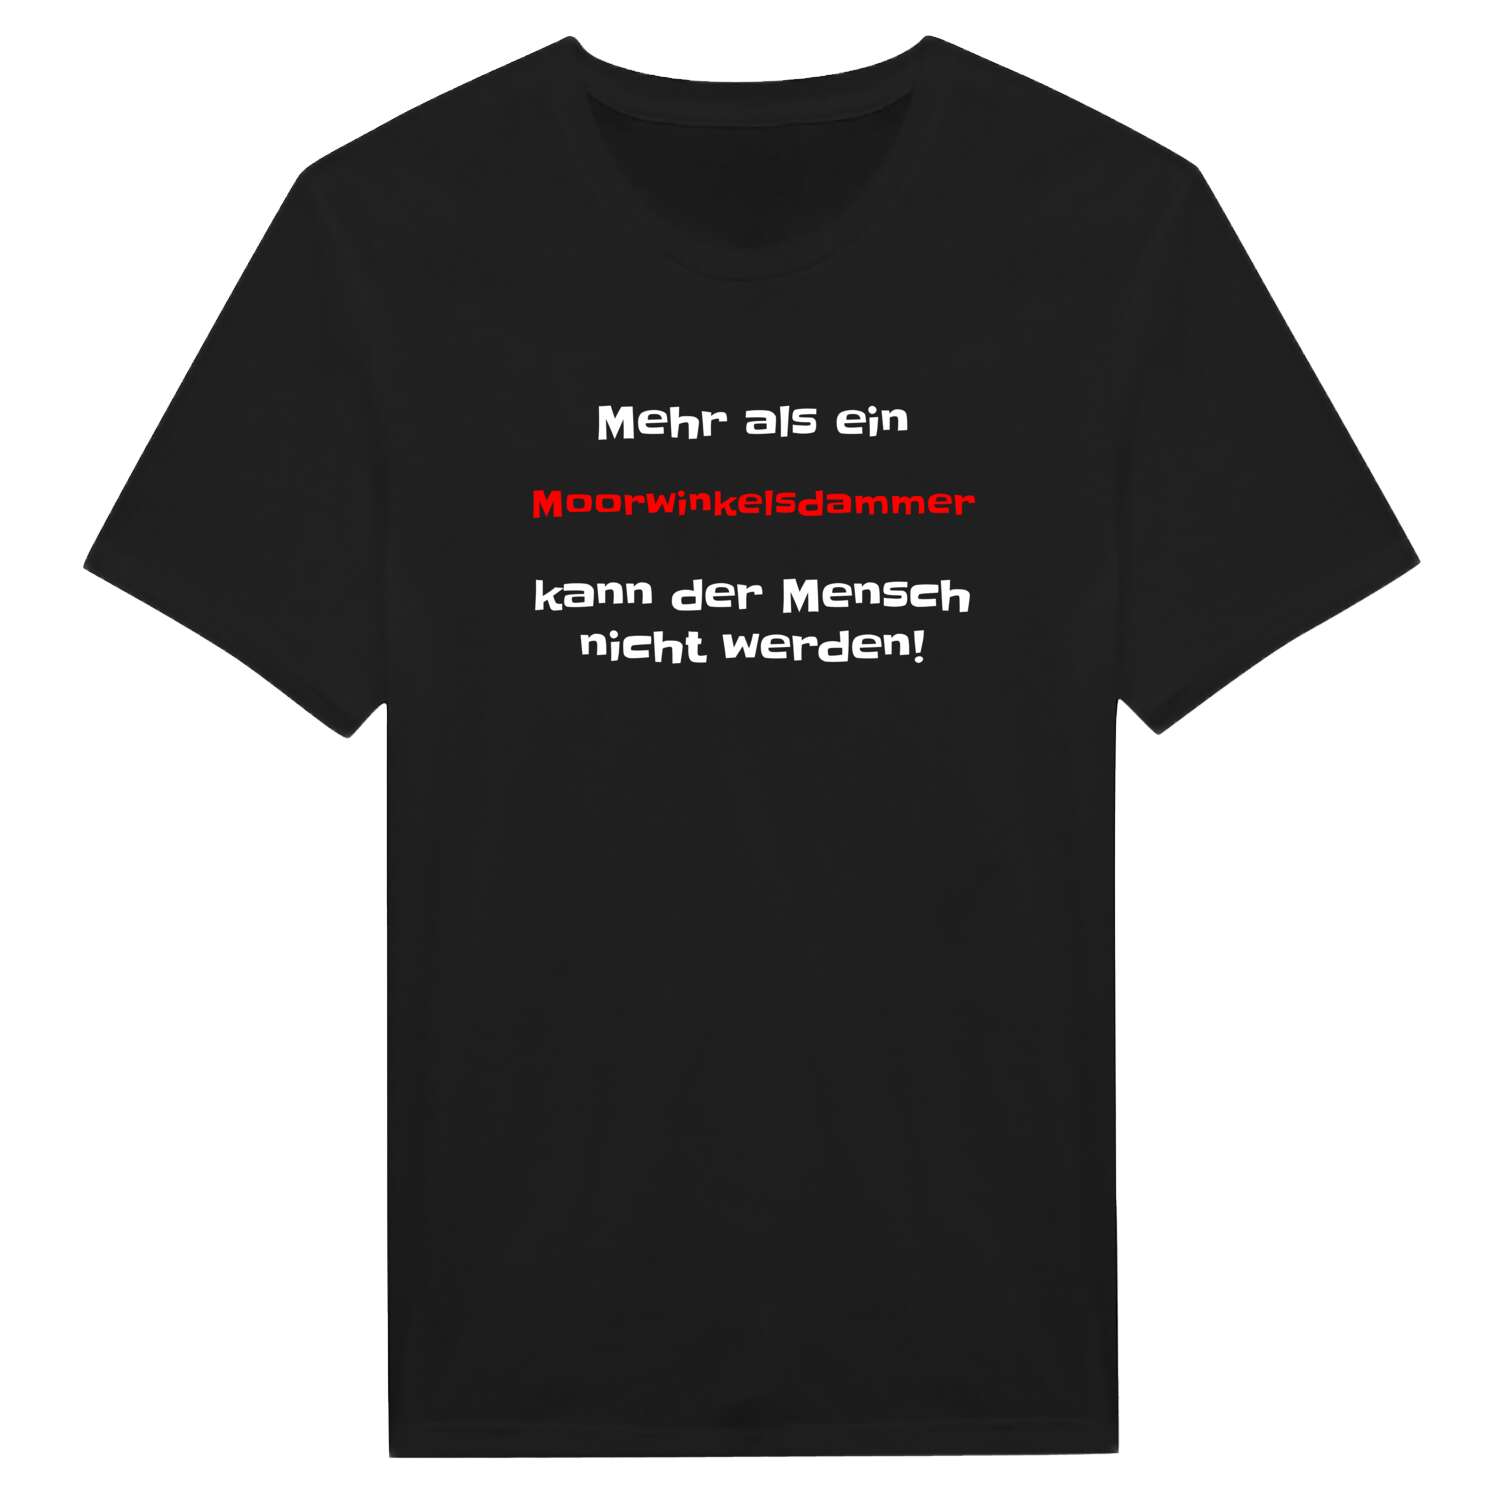 Moorwinkelsdamm T-Shirt »Mehr als ein«